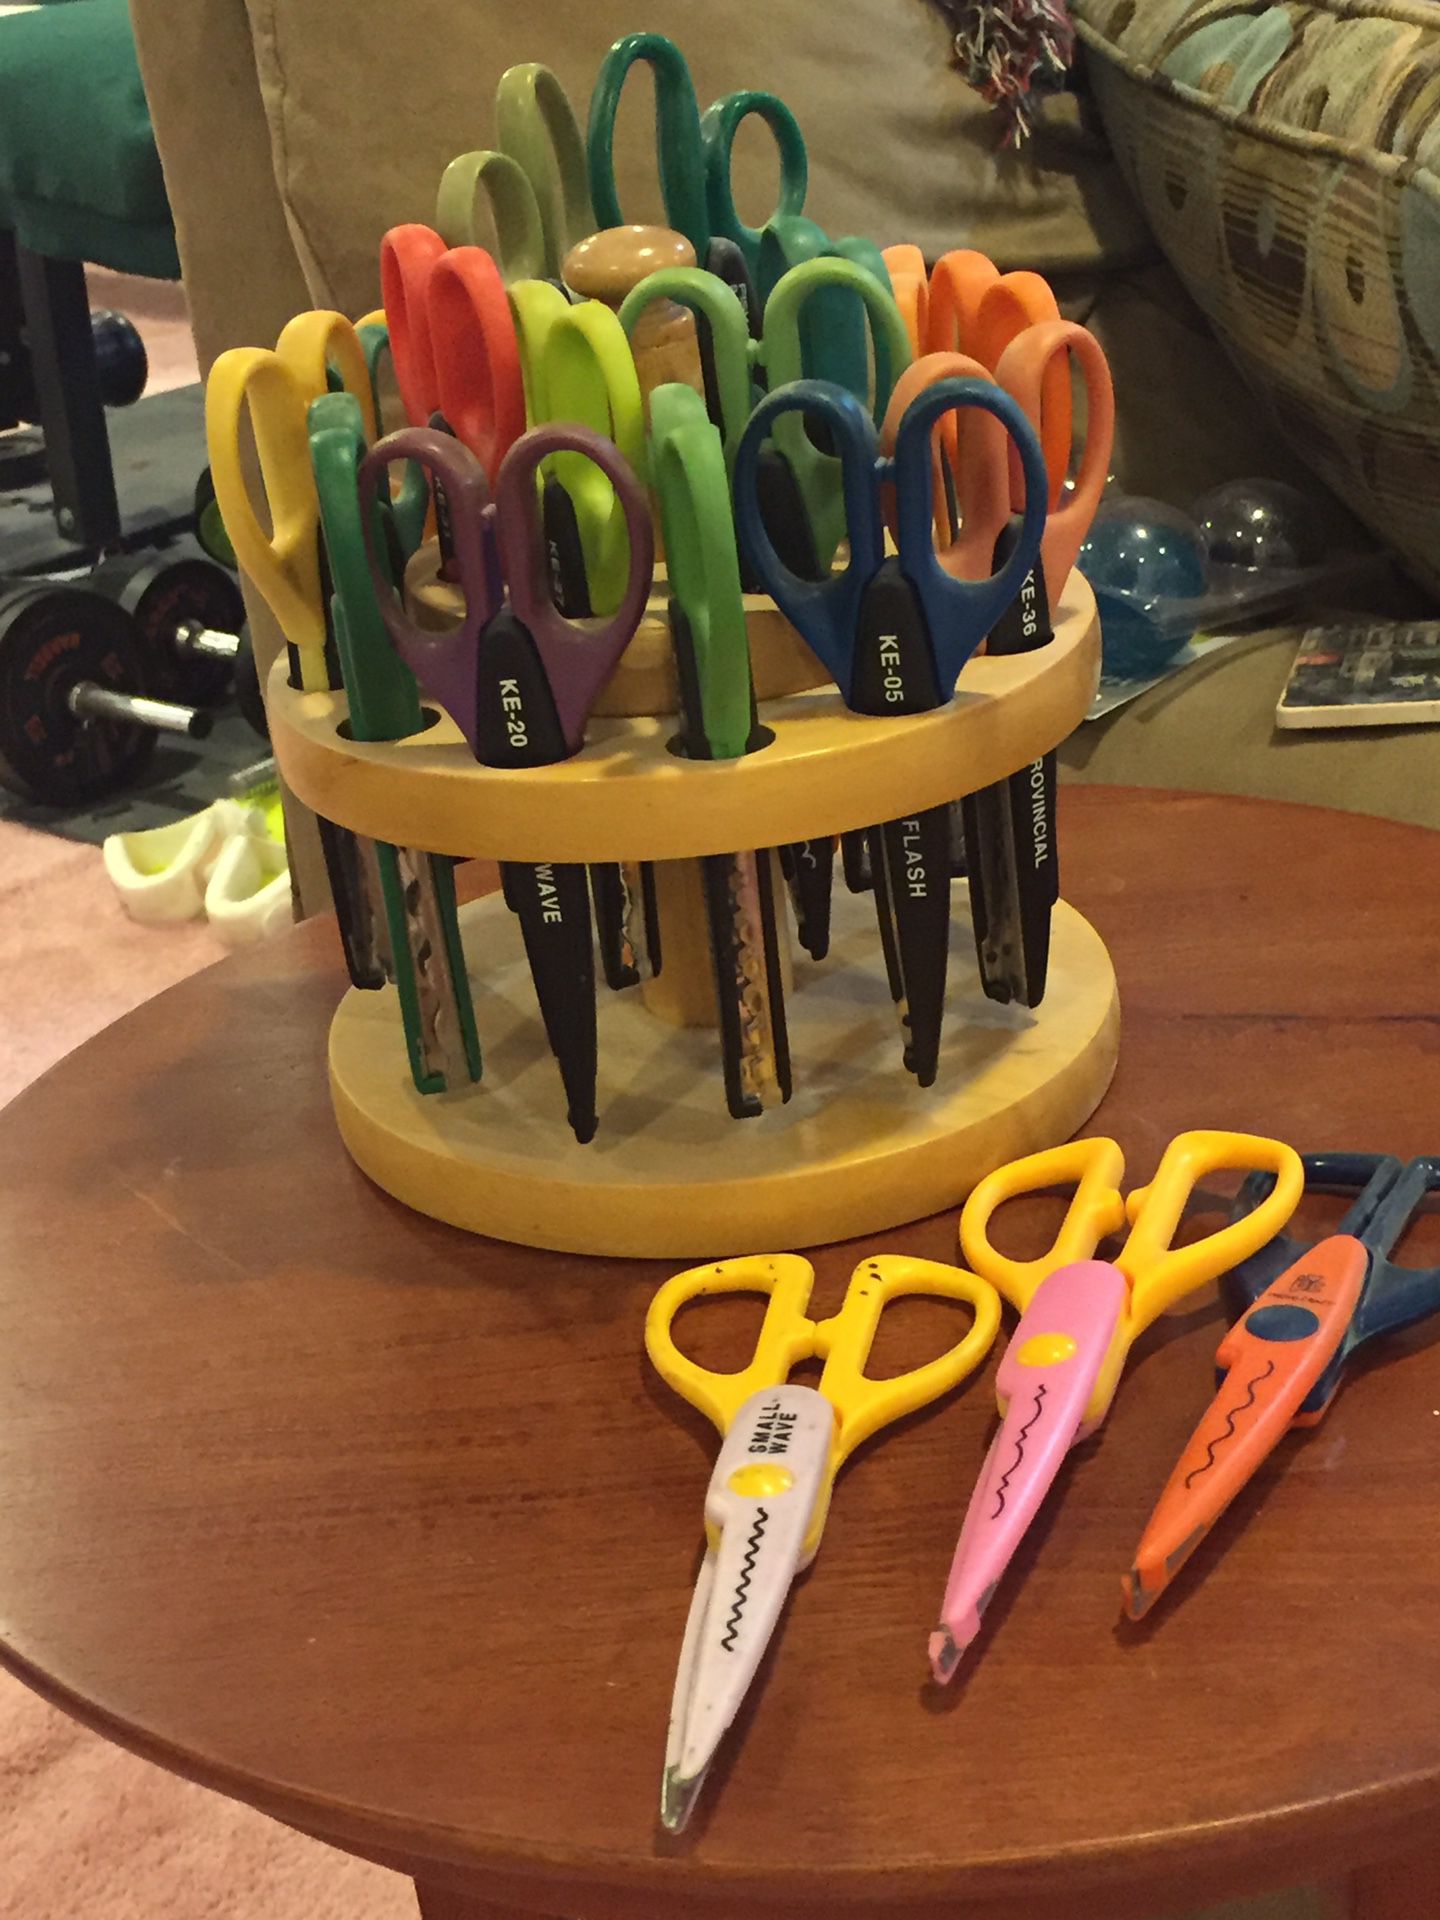 Carousel of 21 craft scissors